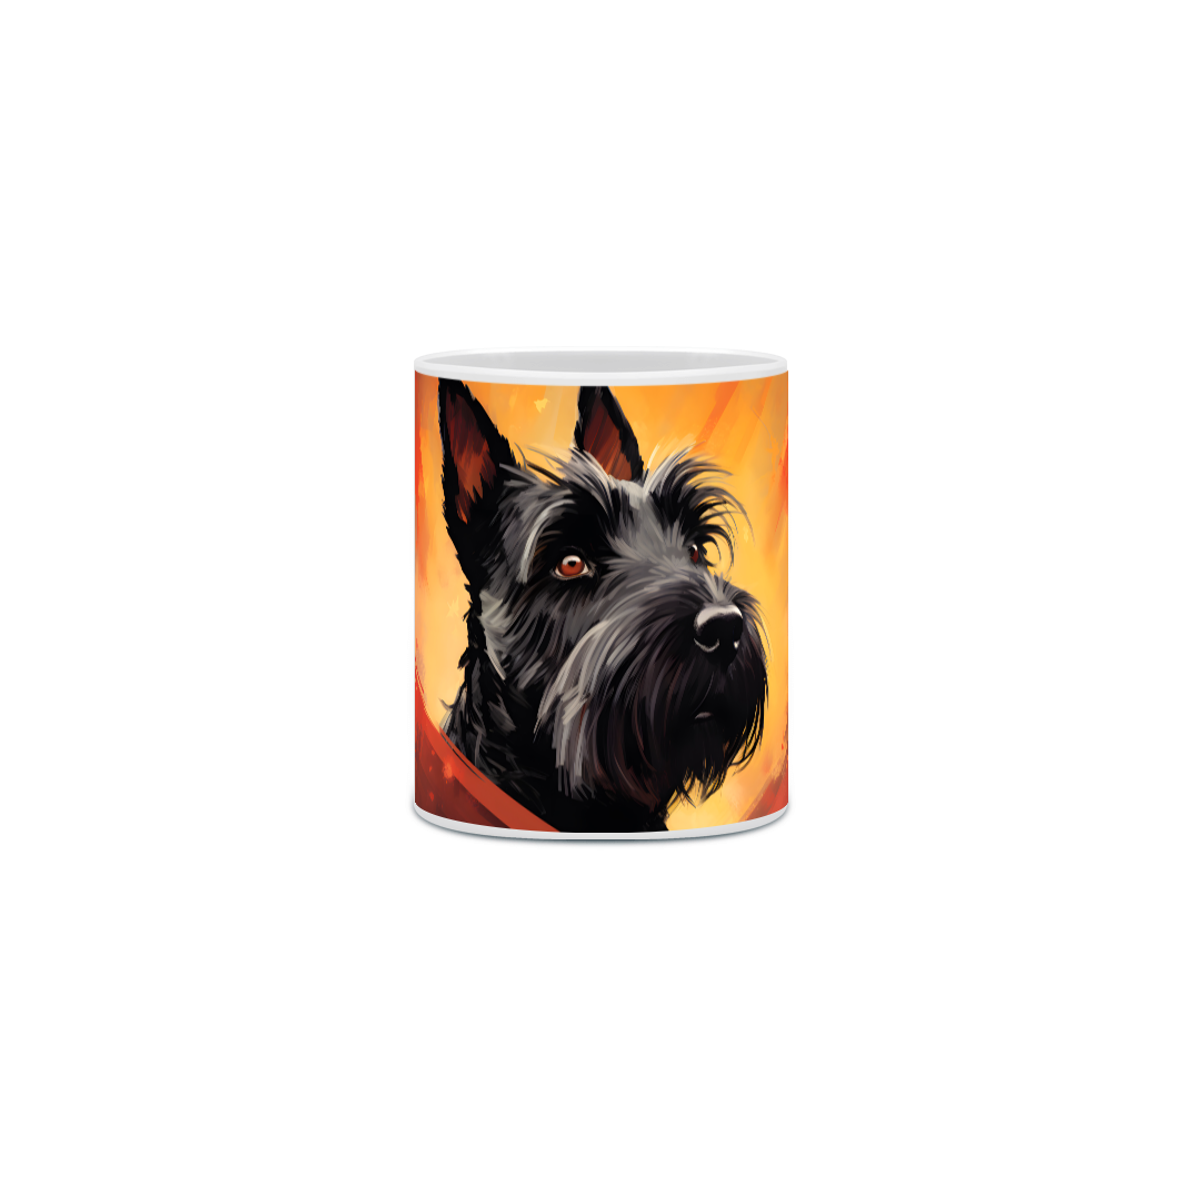 Nome do produto: Caneca Scottish Terrier com Arte Digital - #Autenticidade 0008